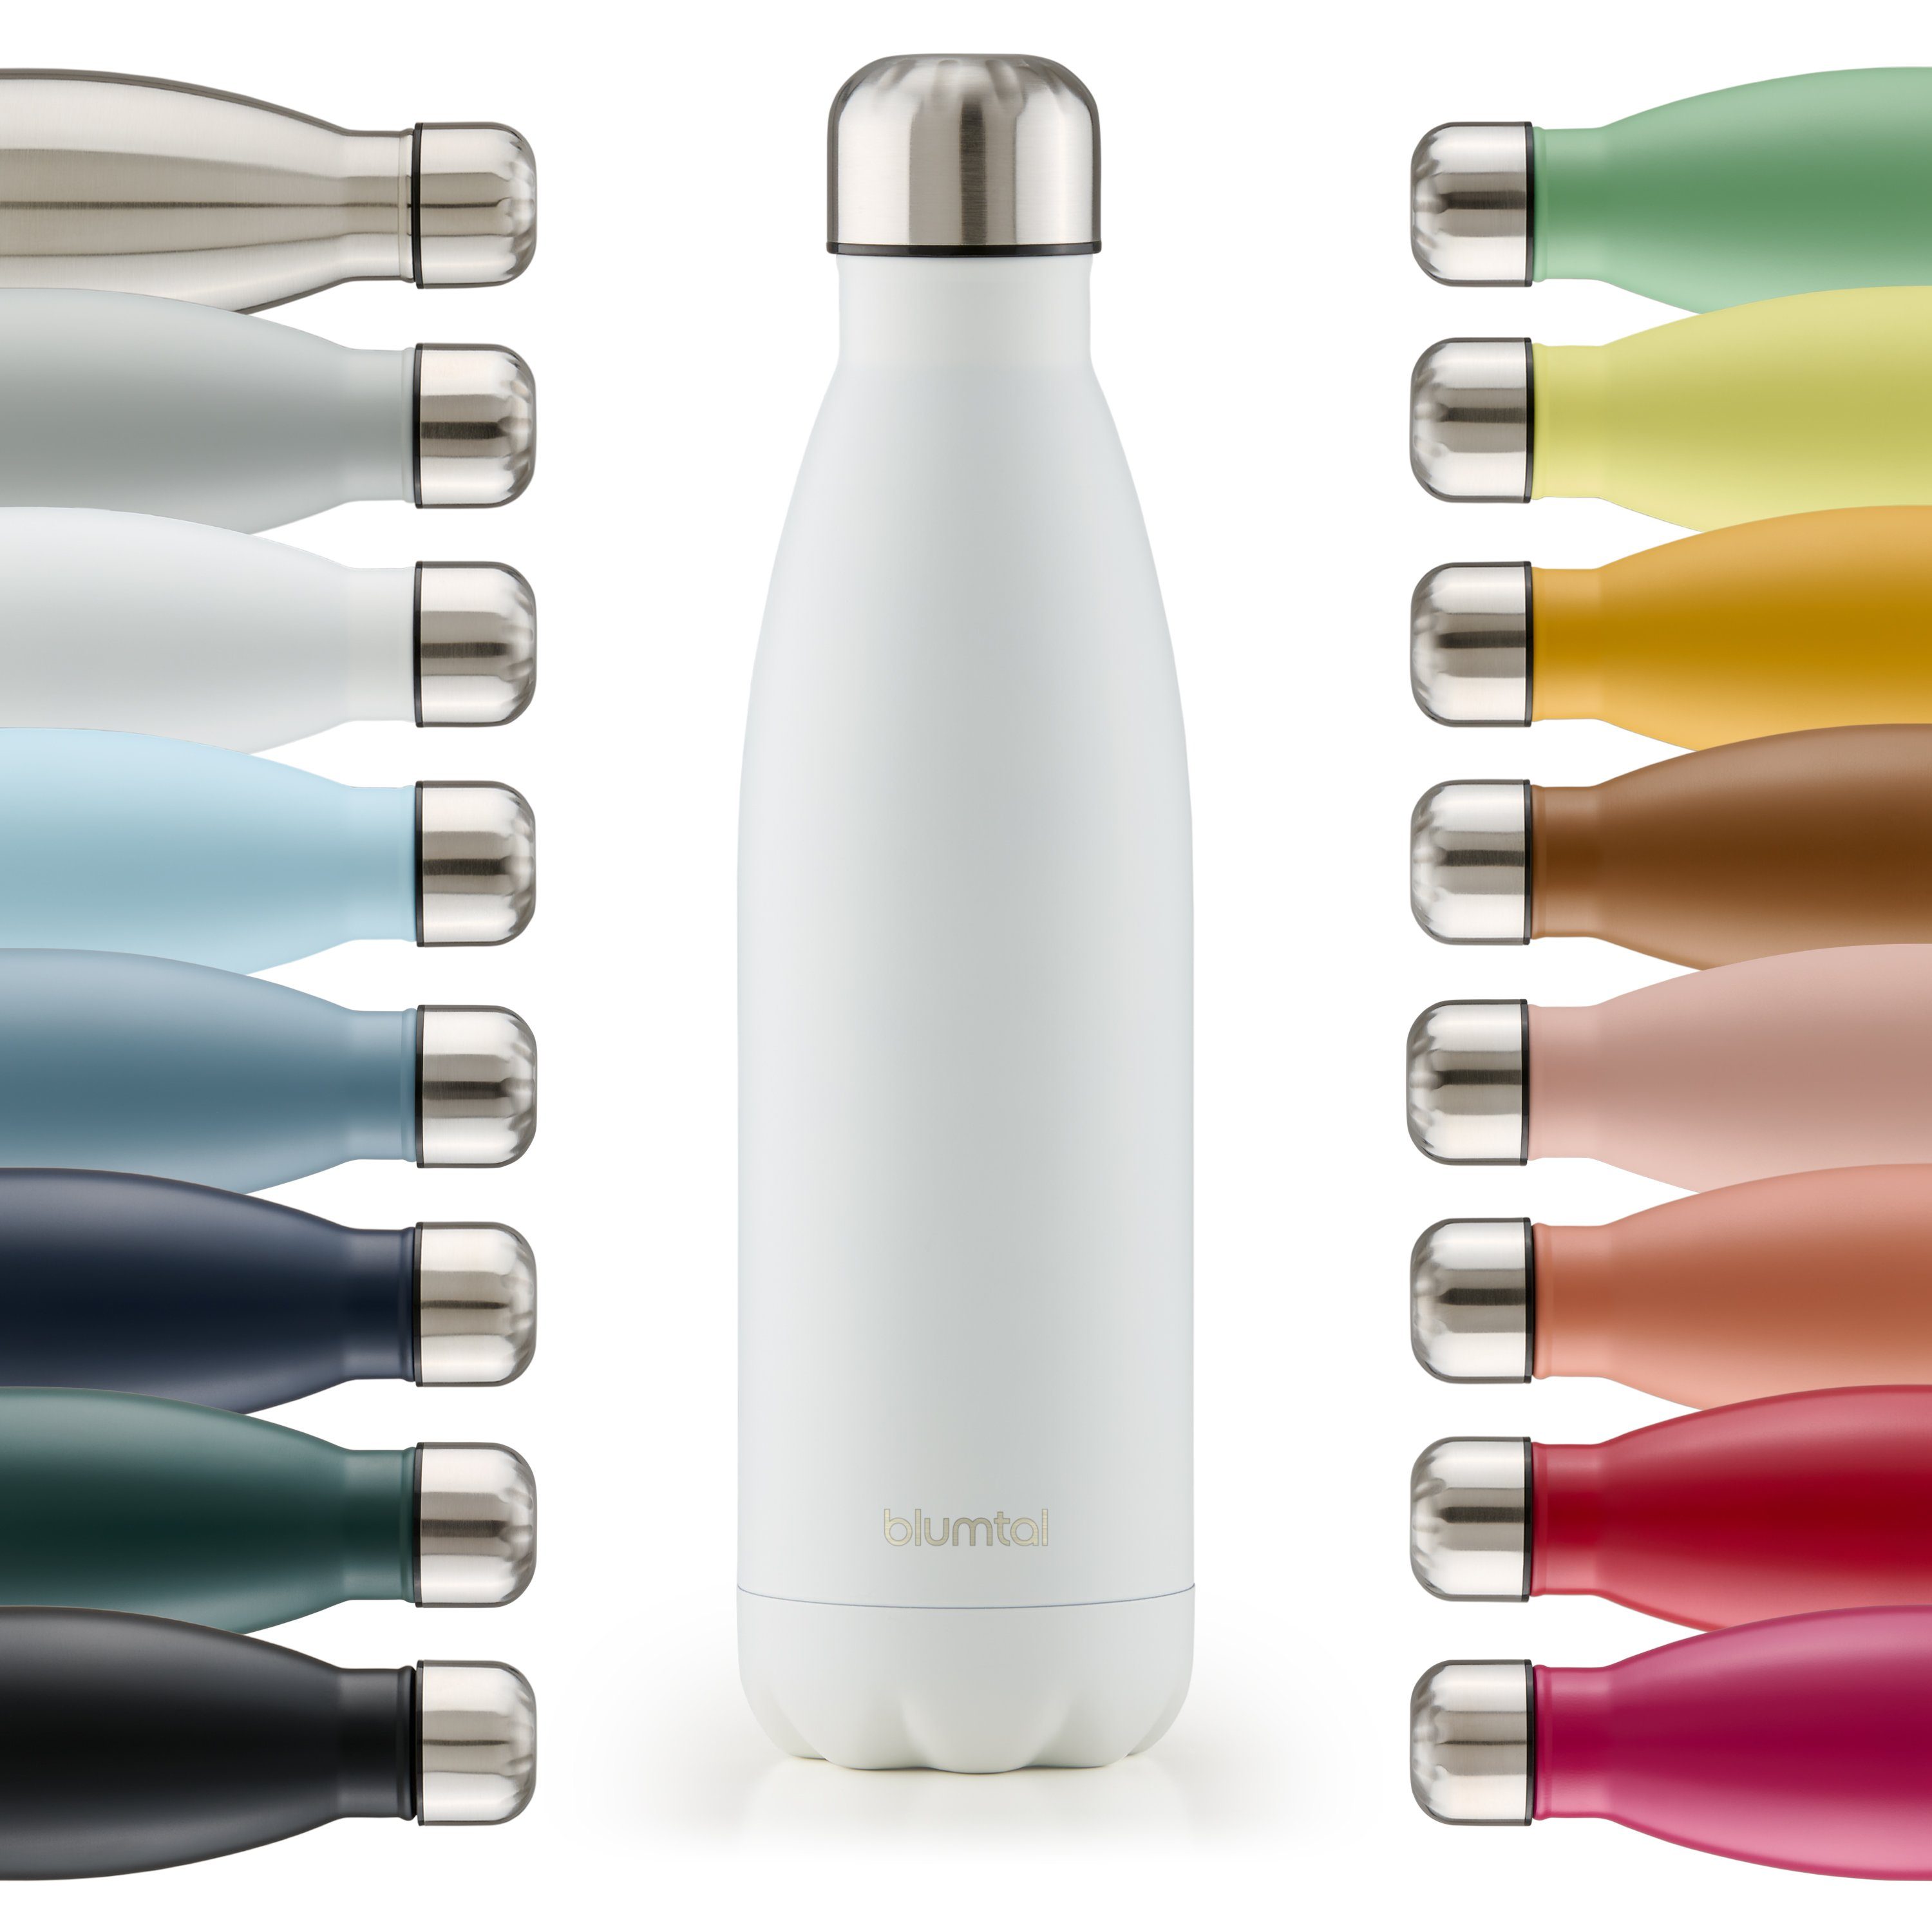 Blumtal Isolierflasche Thermoflasche Charles - auslaufsiche Isolierflasche,  BPA-frei, stundenlange Isolation von Warm- und Kaltgetränken